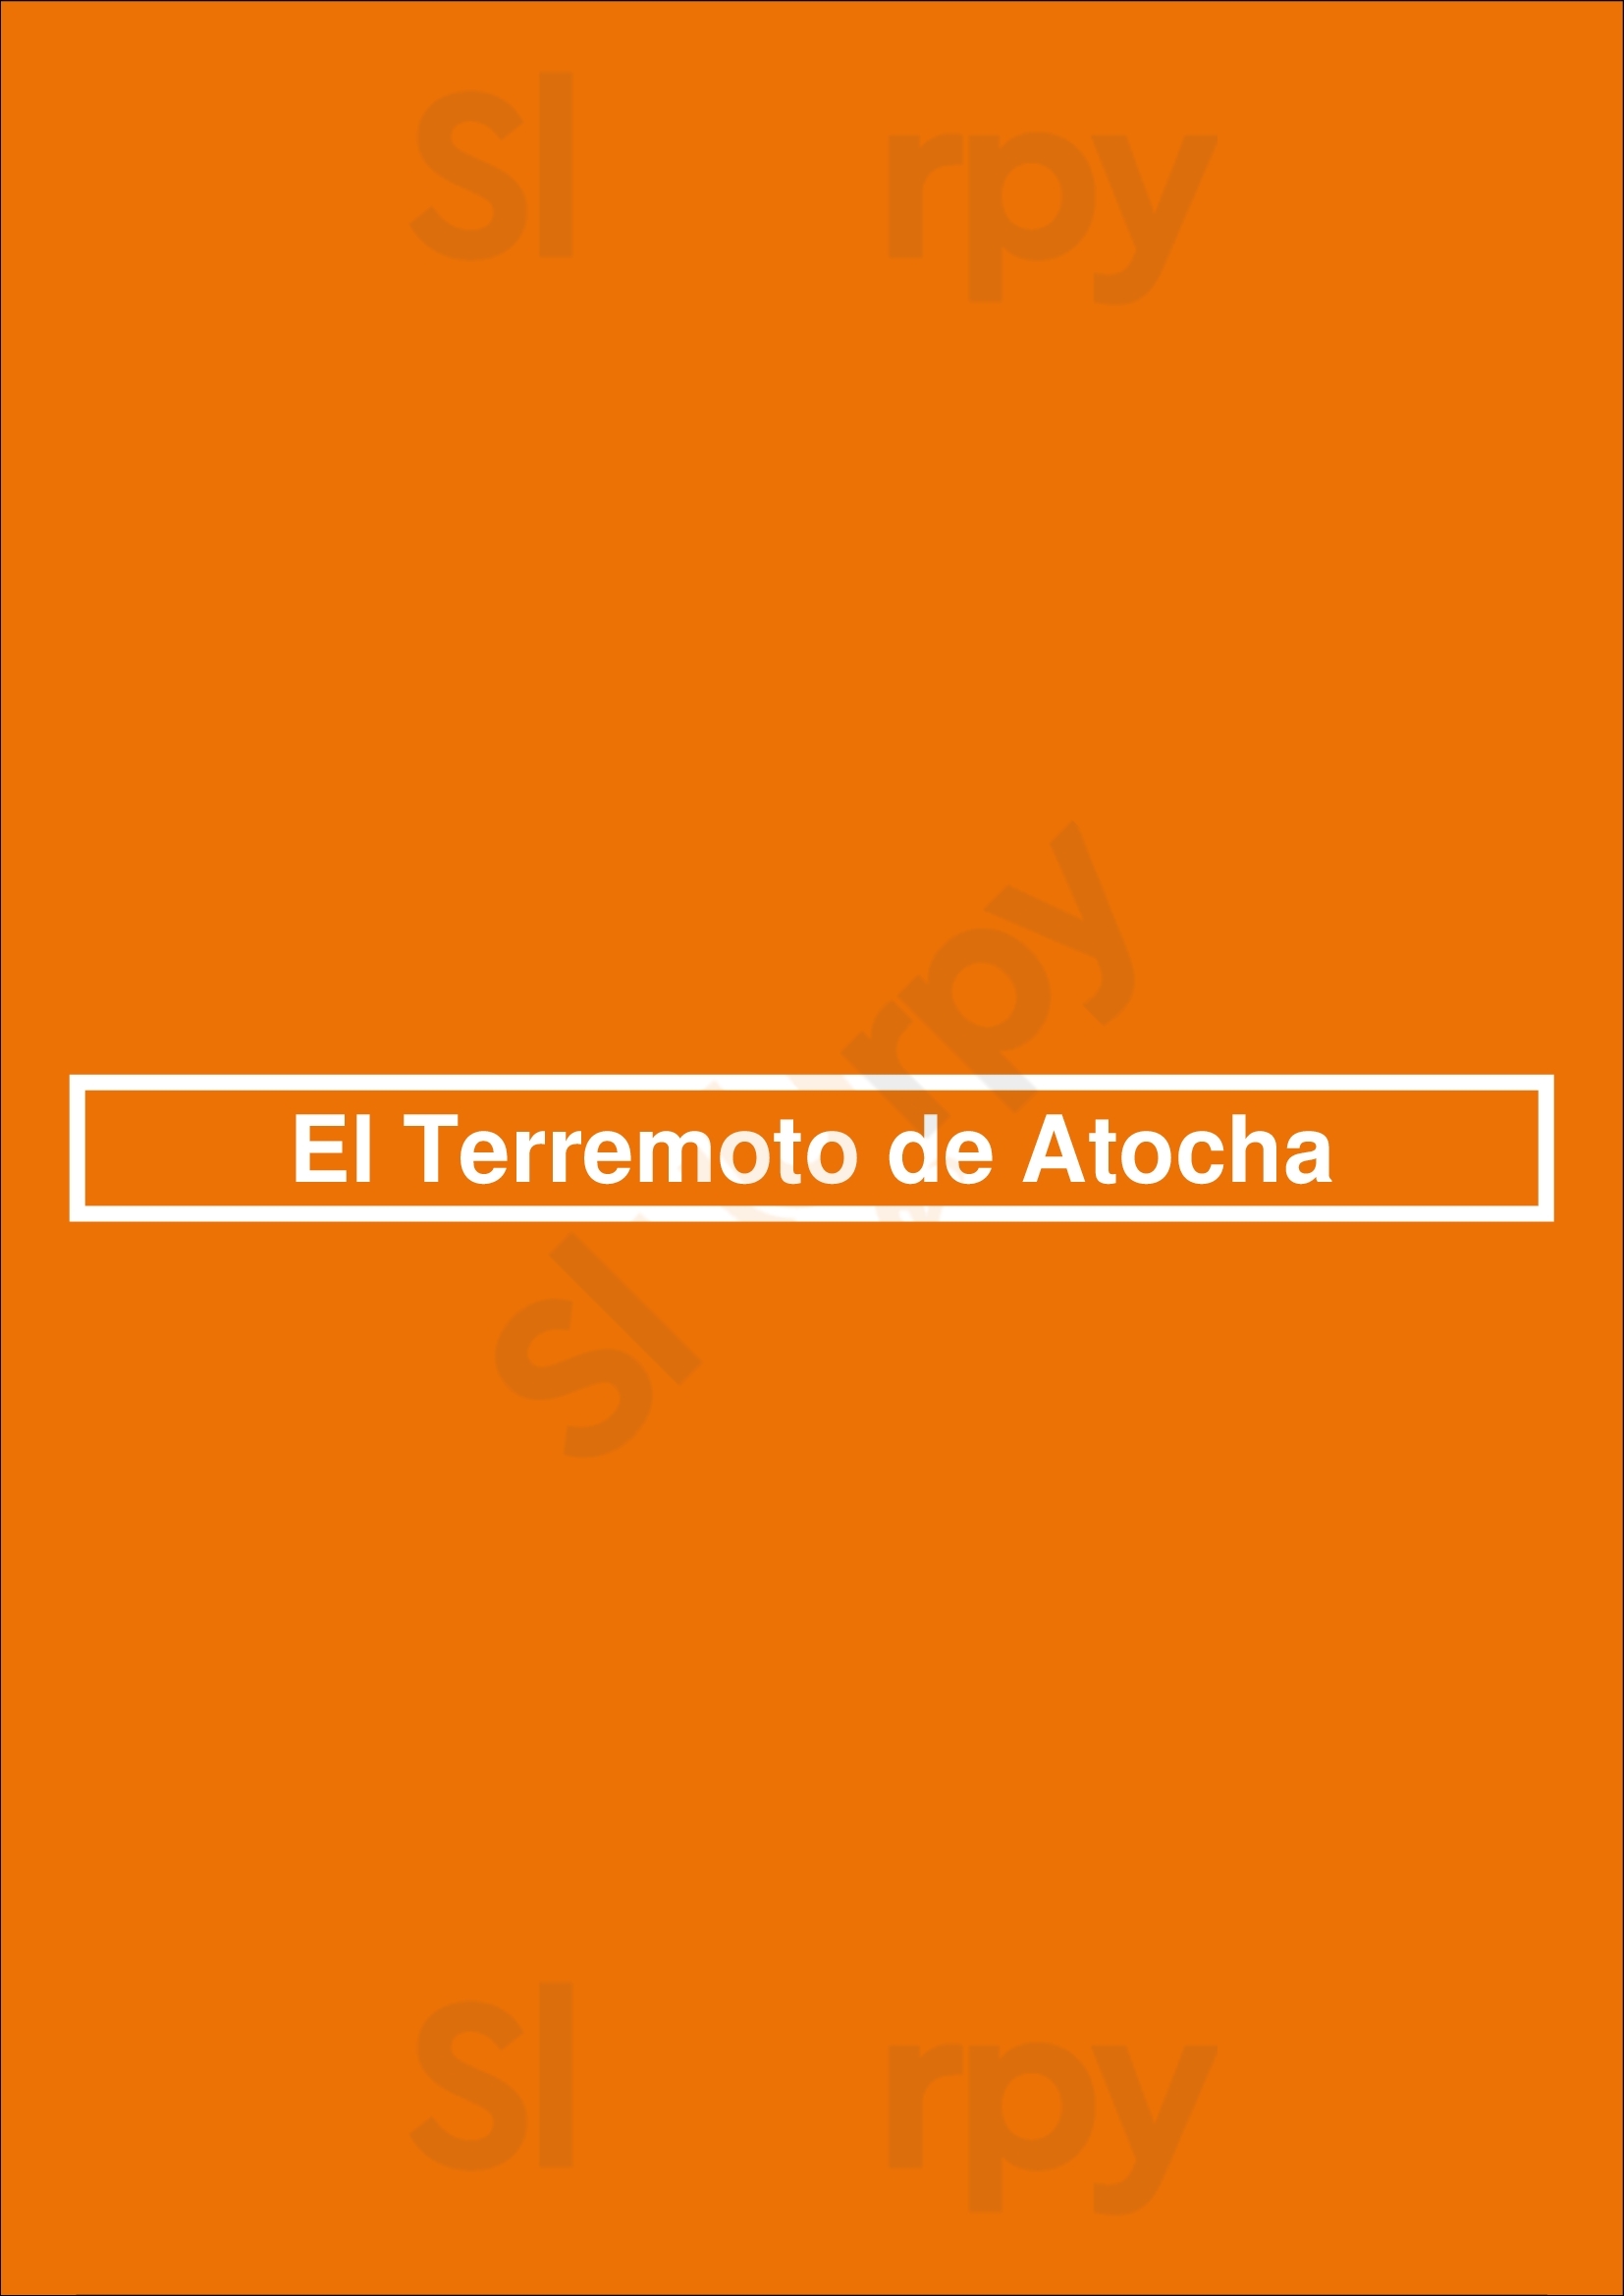 El Terremoto De Atocha Madrid Menu - 1